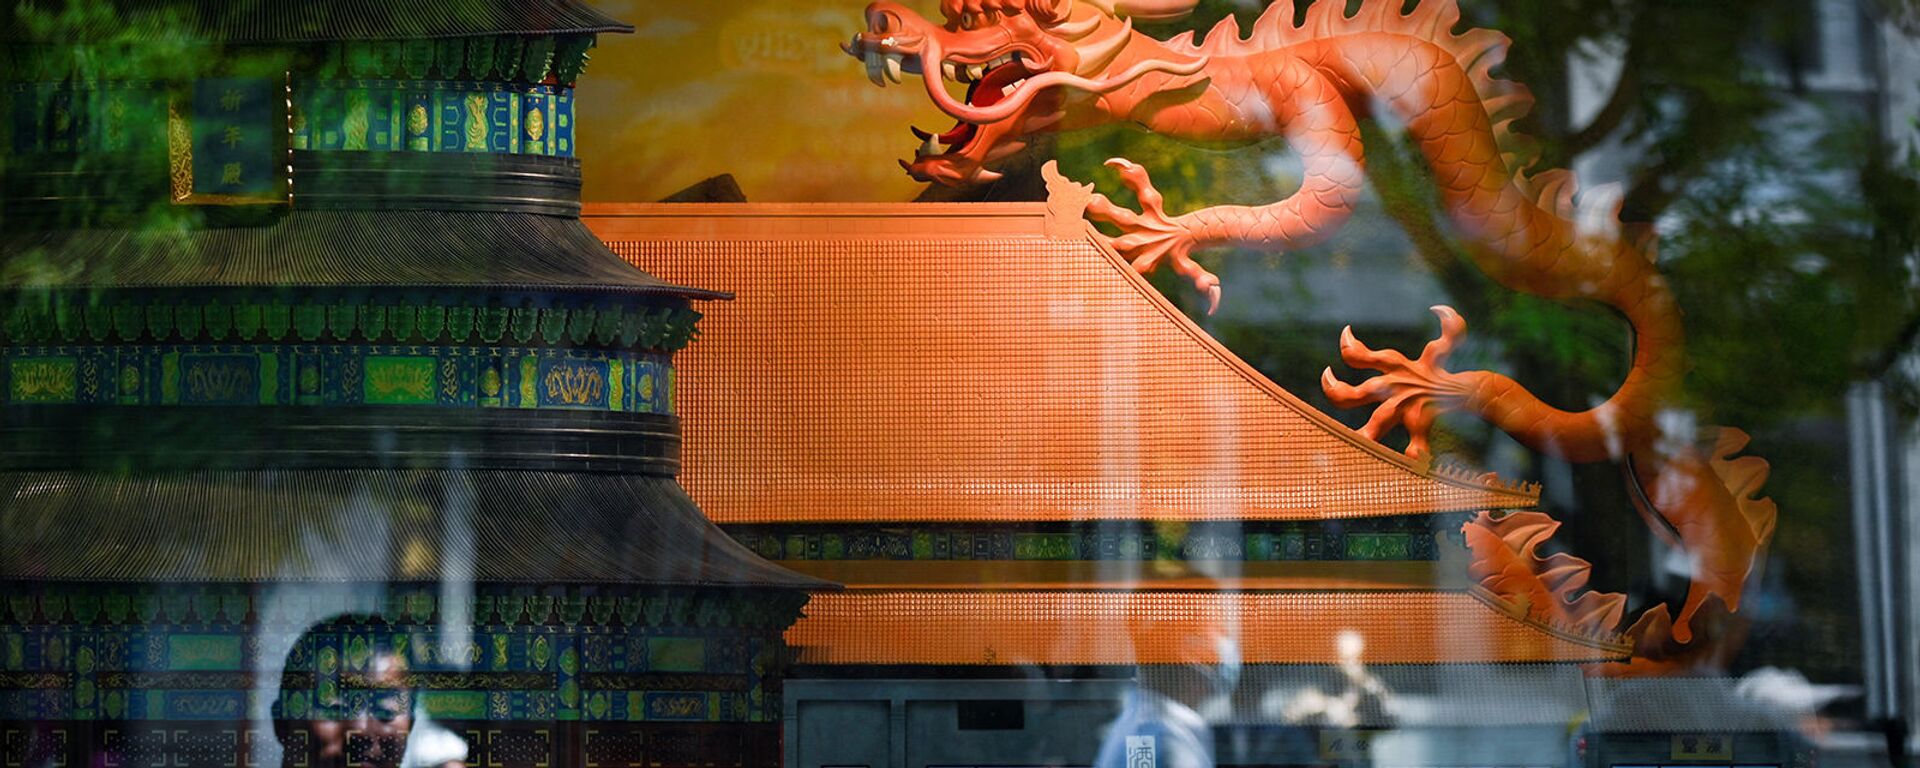 Модель дракона выставлена на витрине на улице Пекина - Sputnik Армения, 1920, 24.12.2021